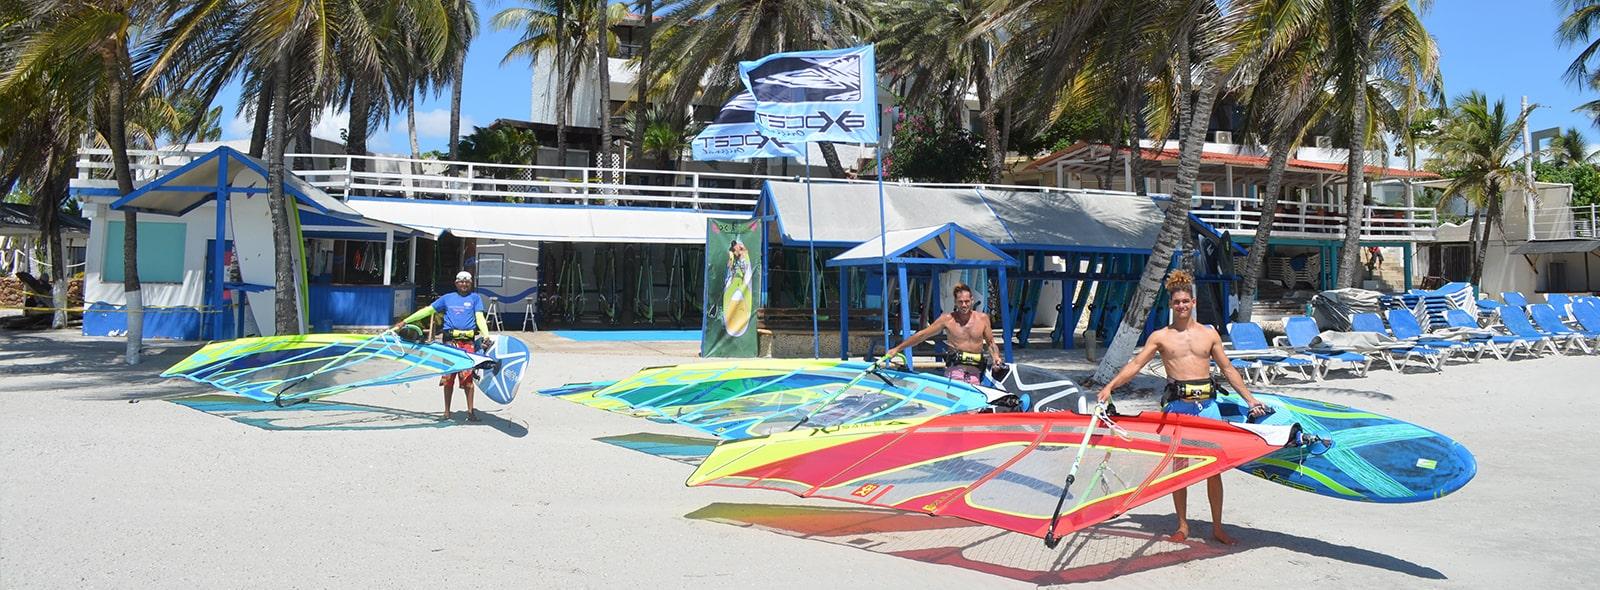 Bienvenue au club Like Wind Center specialiste en windsurf sur le spot de El Yaque au Venezuela